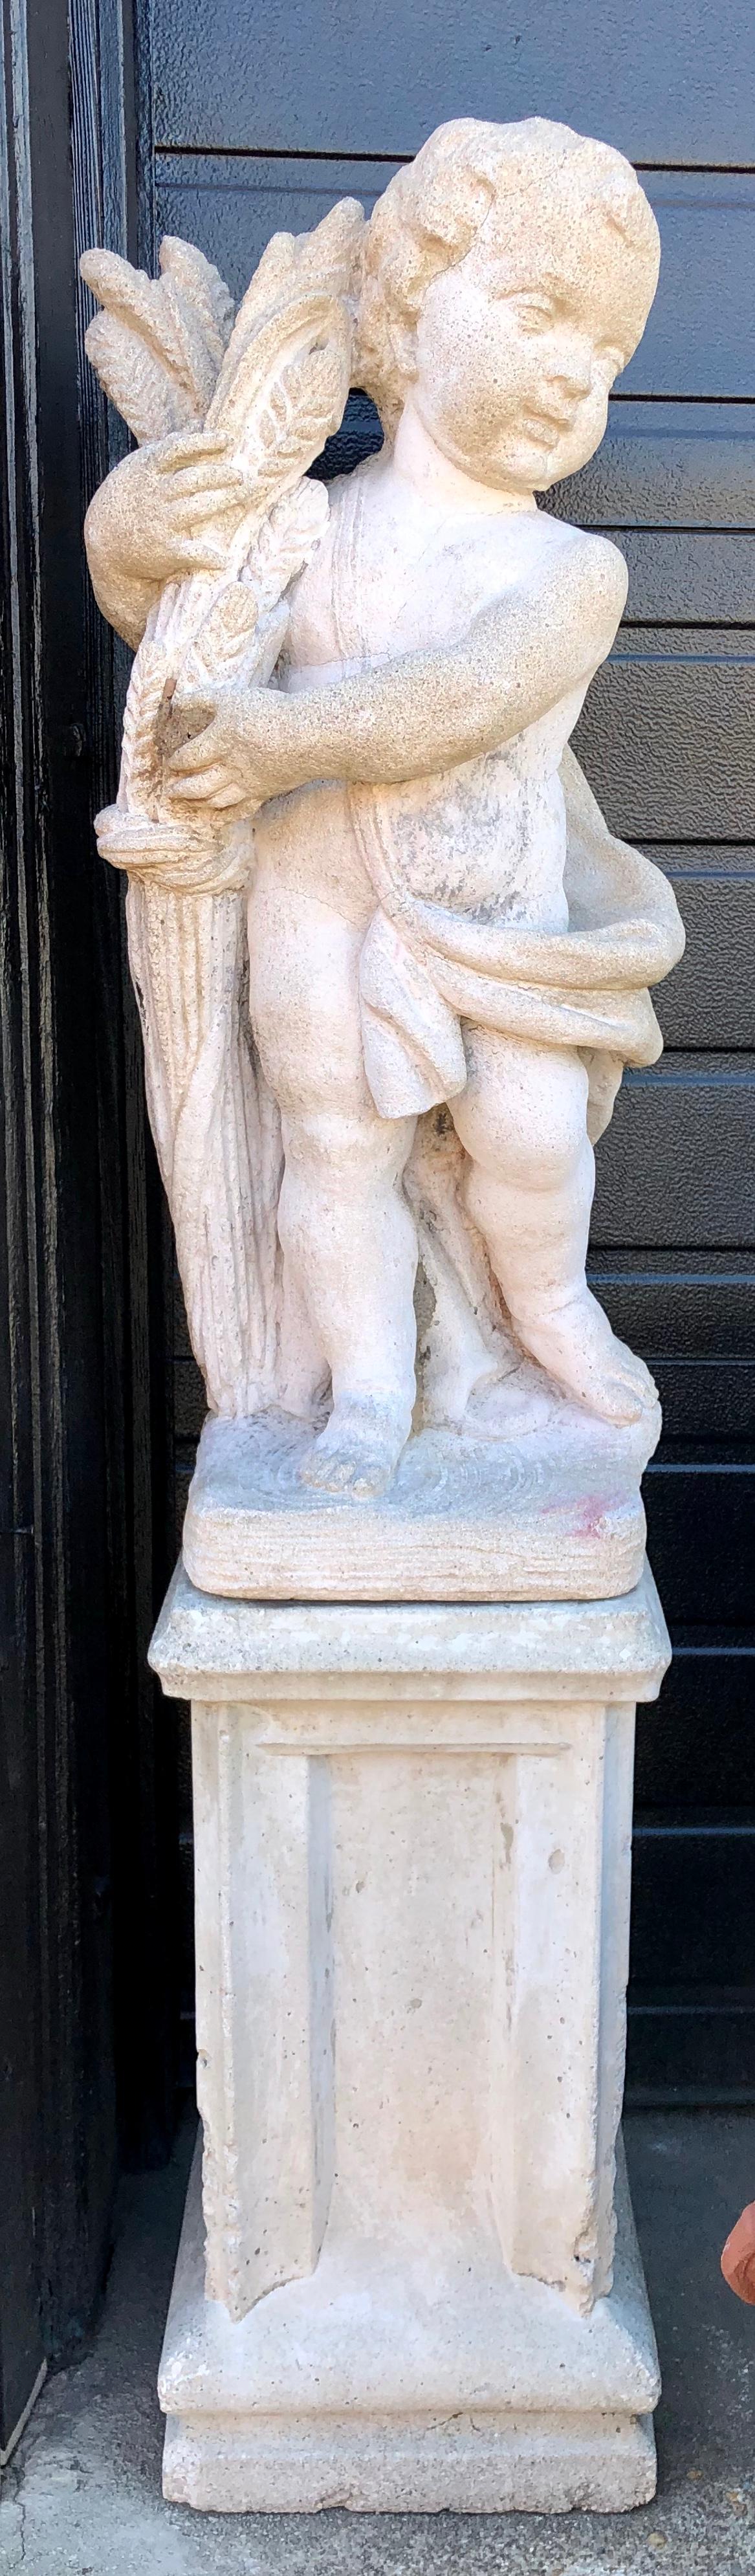 concrete cherub statues